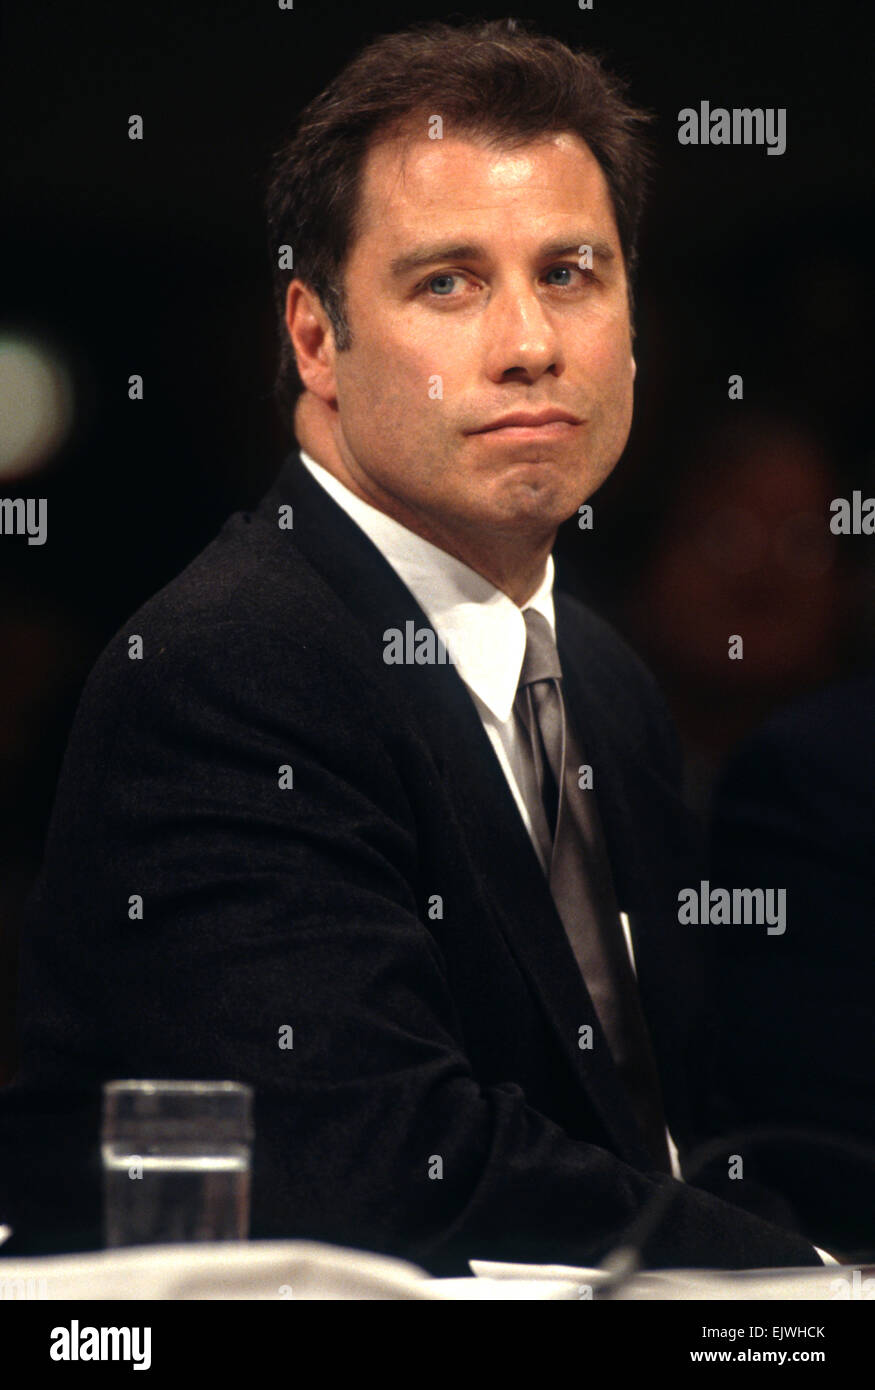 L'acteur John Travolta parle à l'appui de la Scientologie au cours des témoignages au congrès le 18 septembre 1997 à Washington, DC. Banque D'Images